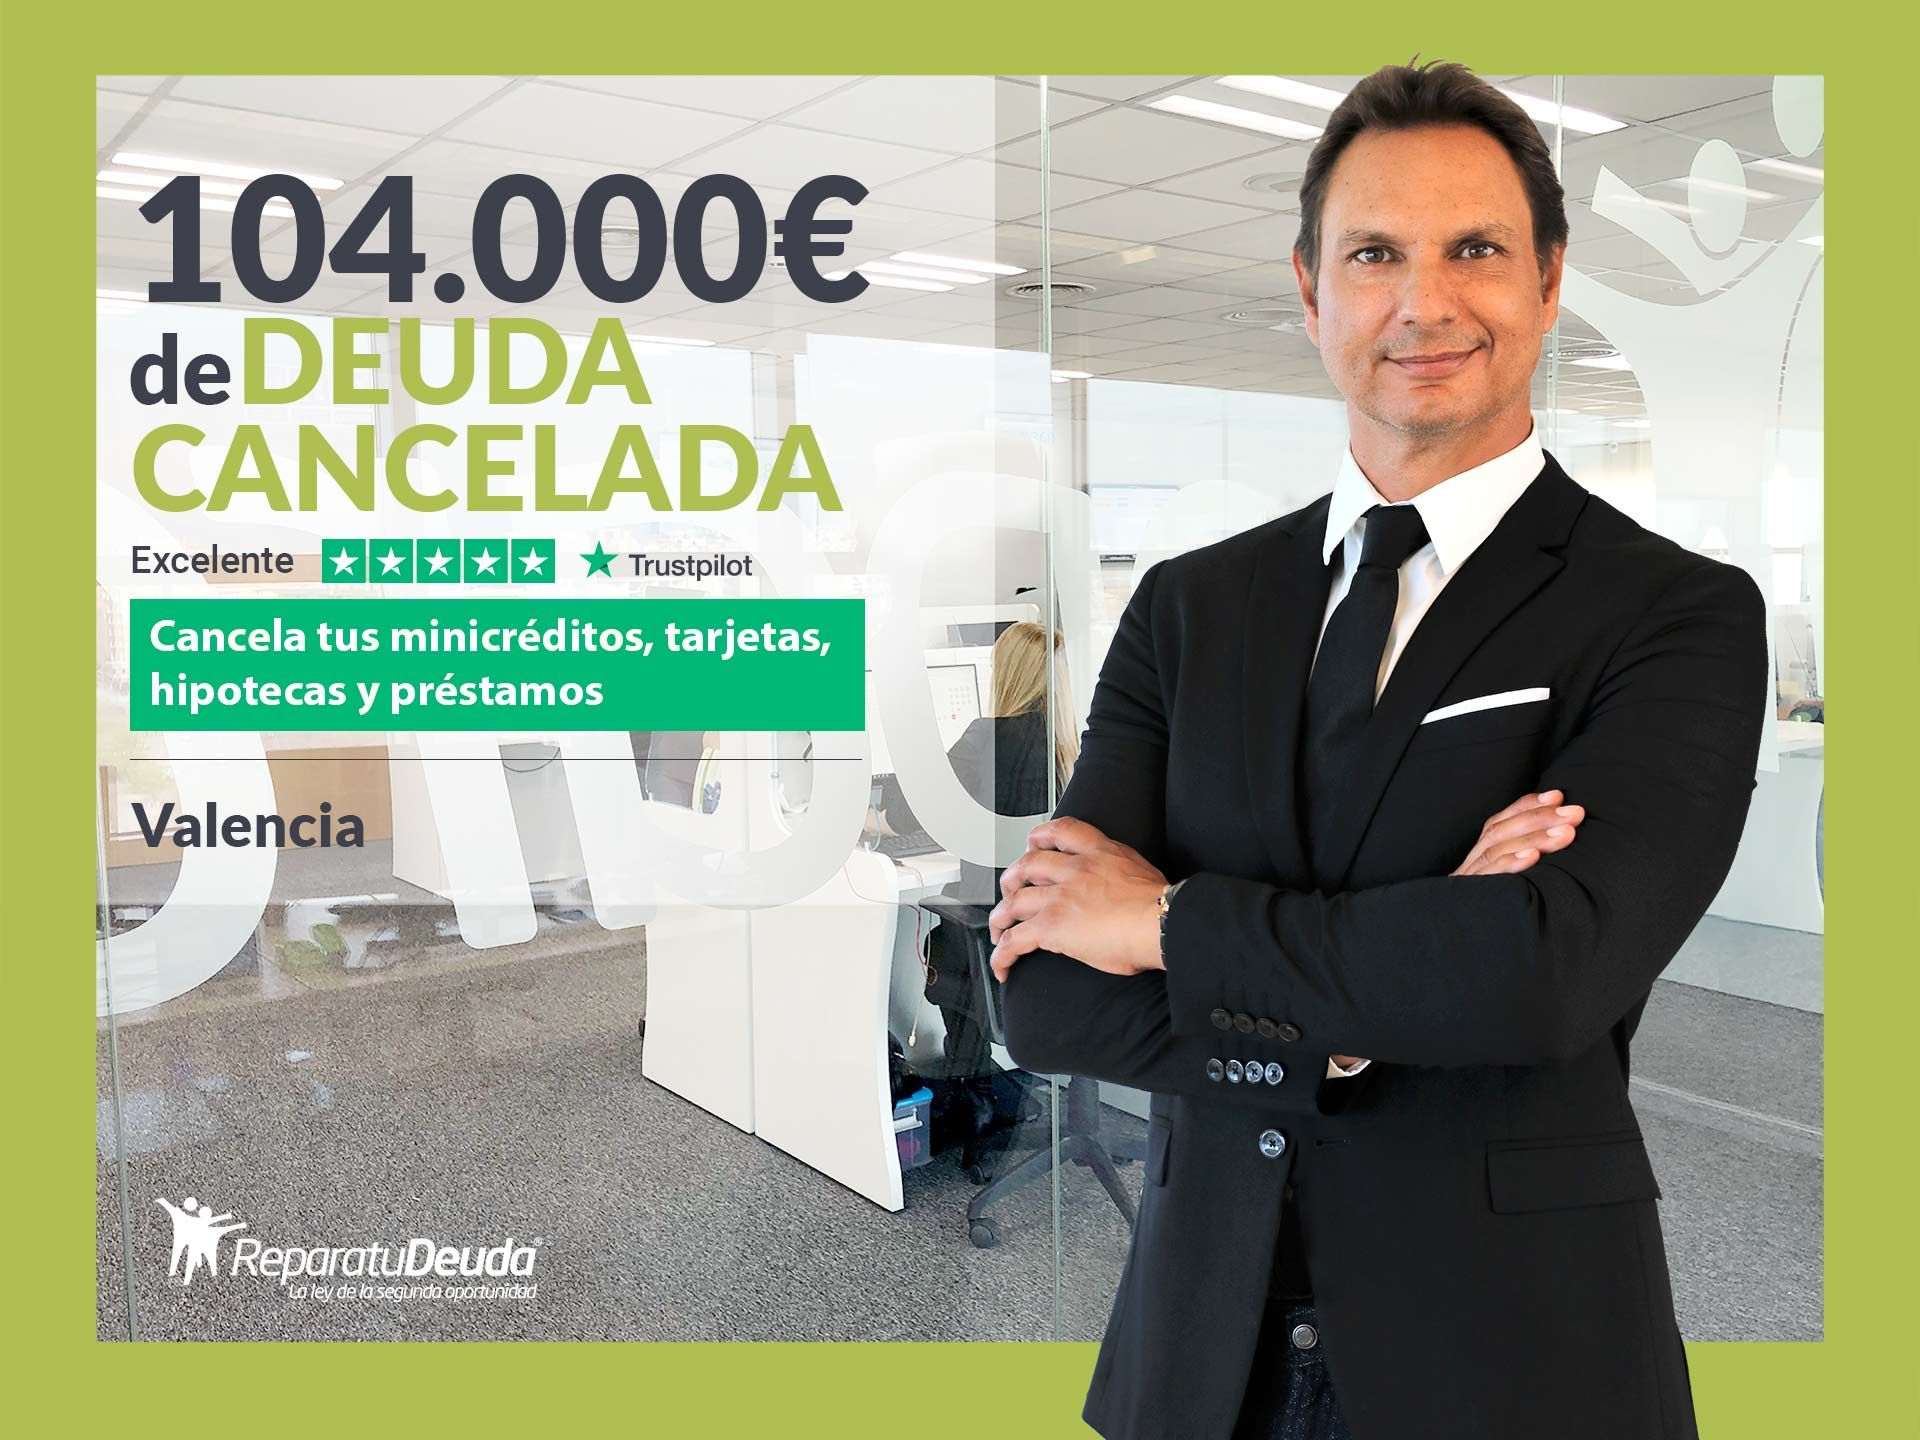 Repara tu Deuda Abogados cancela 104.000? en Valencia con la Ley de Segunda Oportunidad